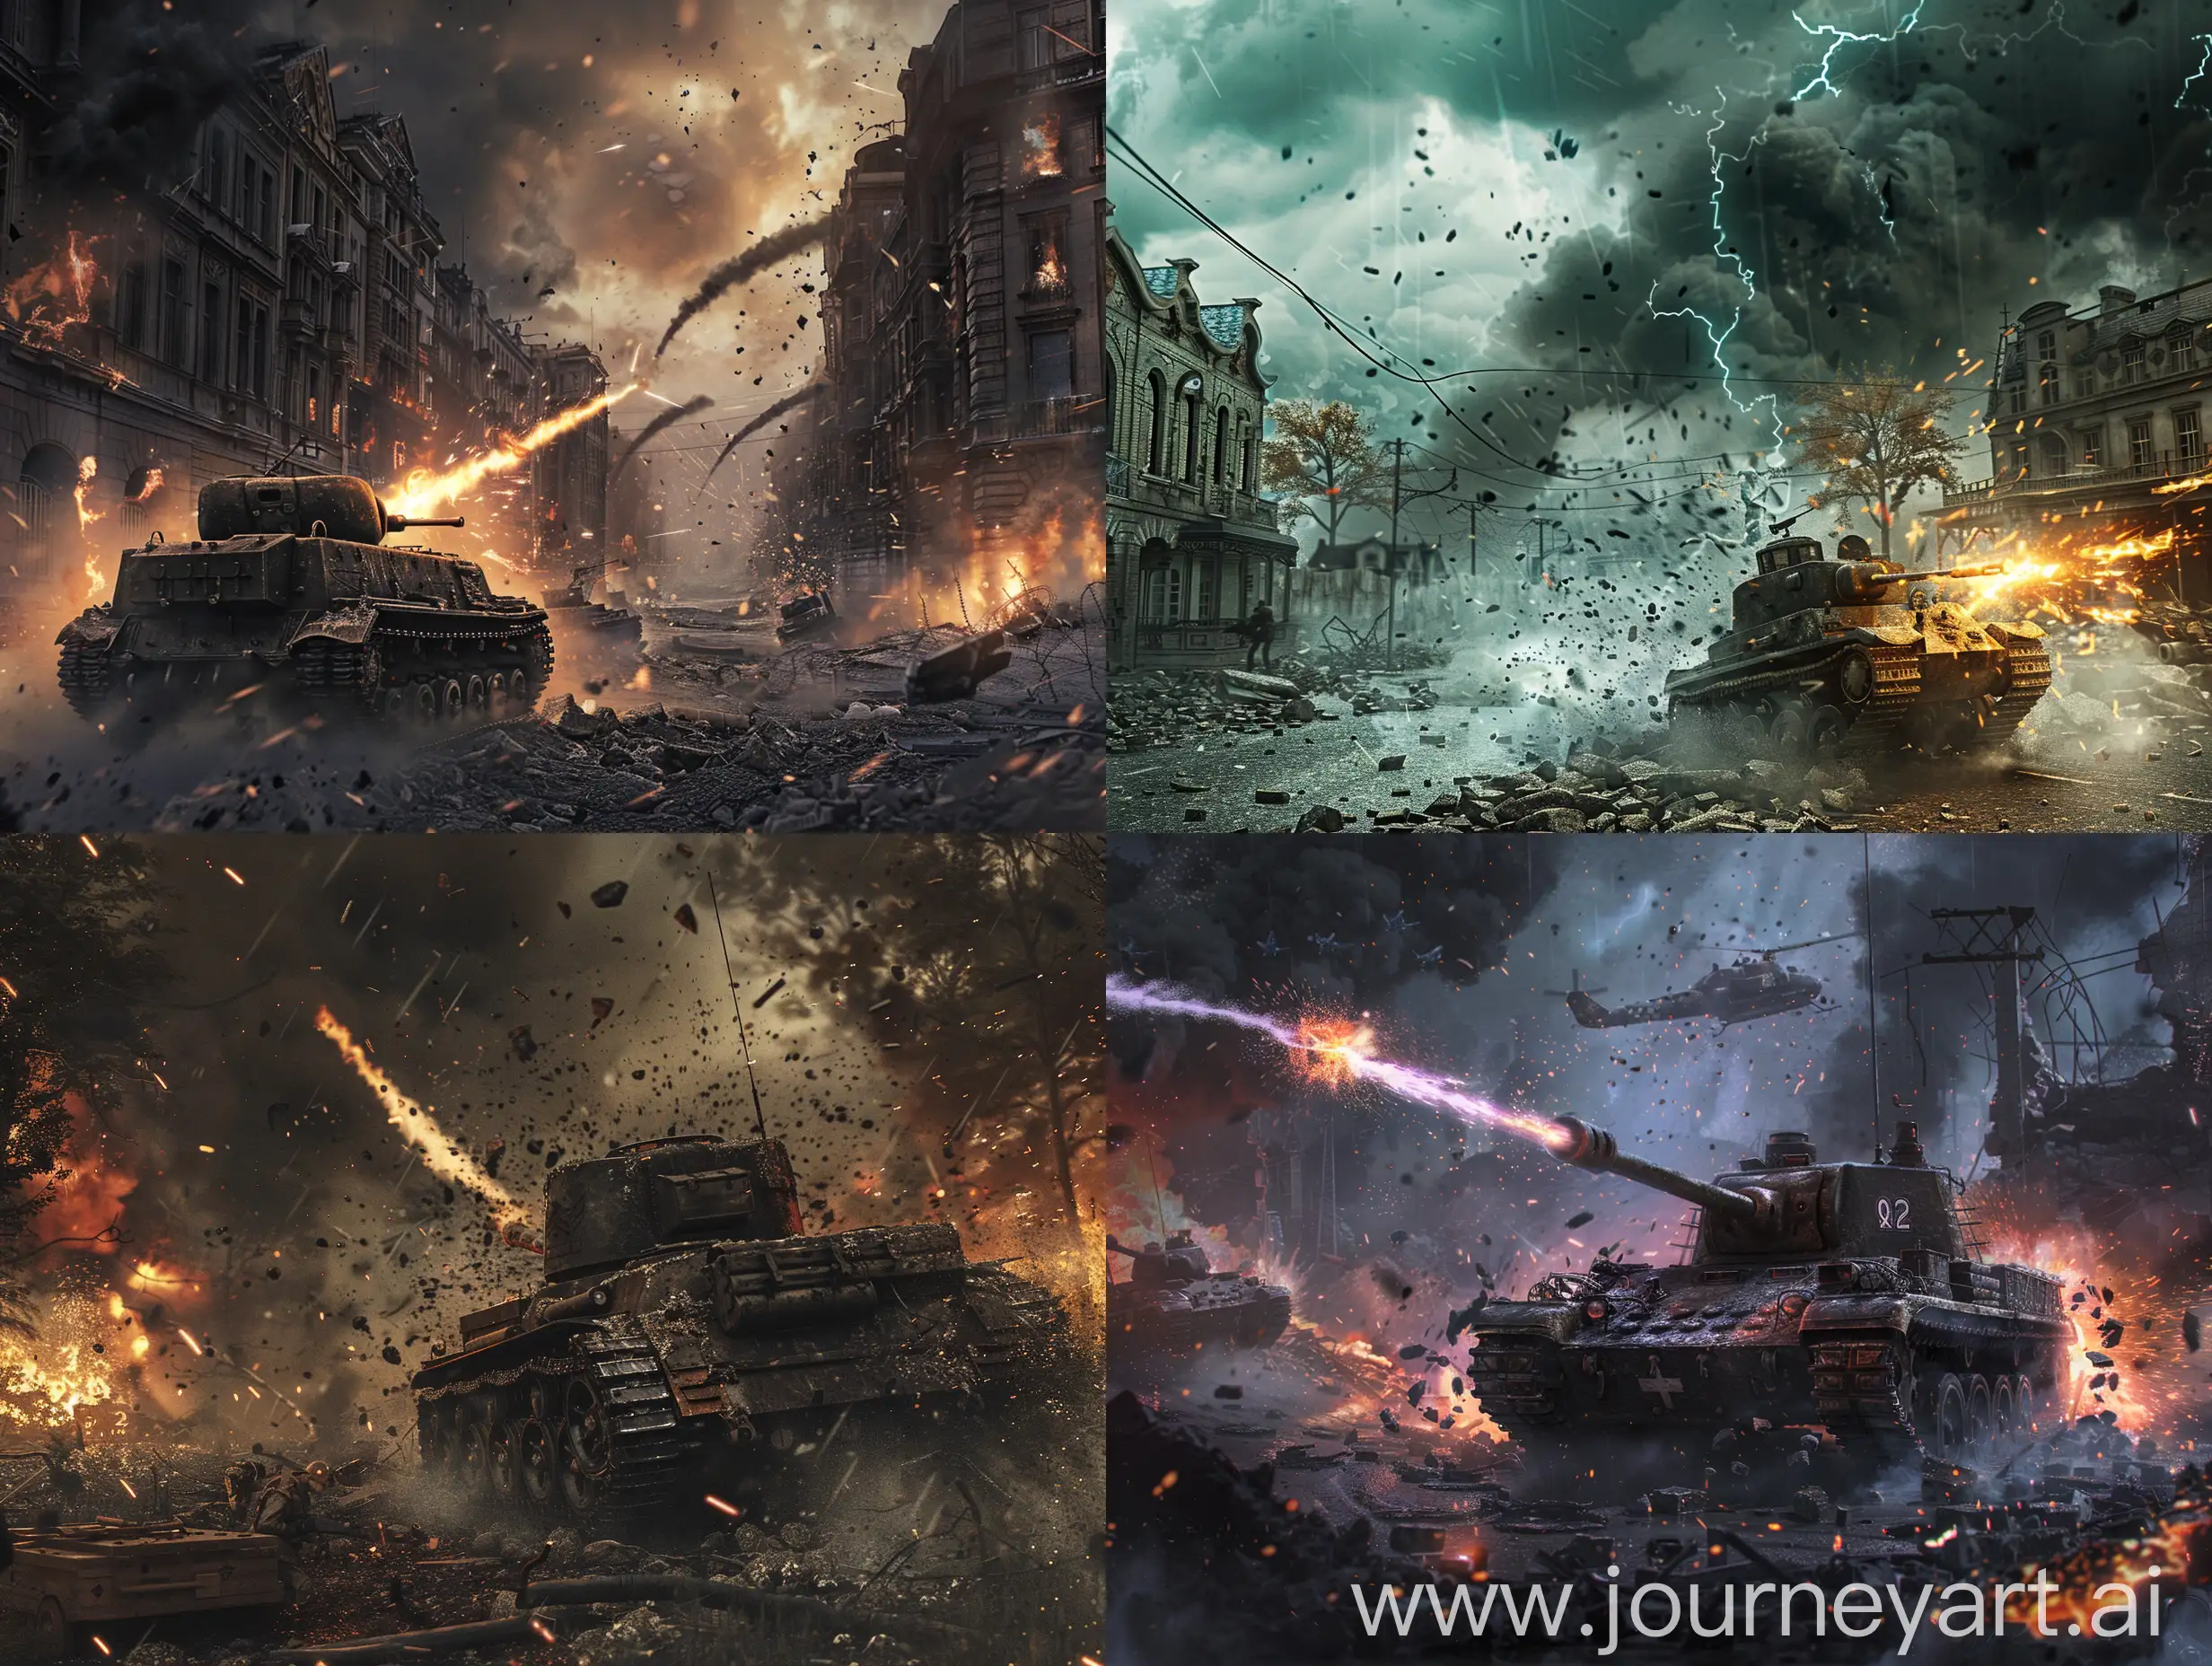 Magical-Tank-Battles-in-World-War-II-Cinematic-Destruction-Scene